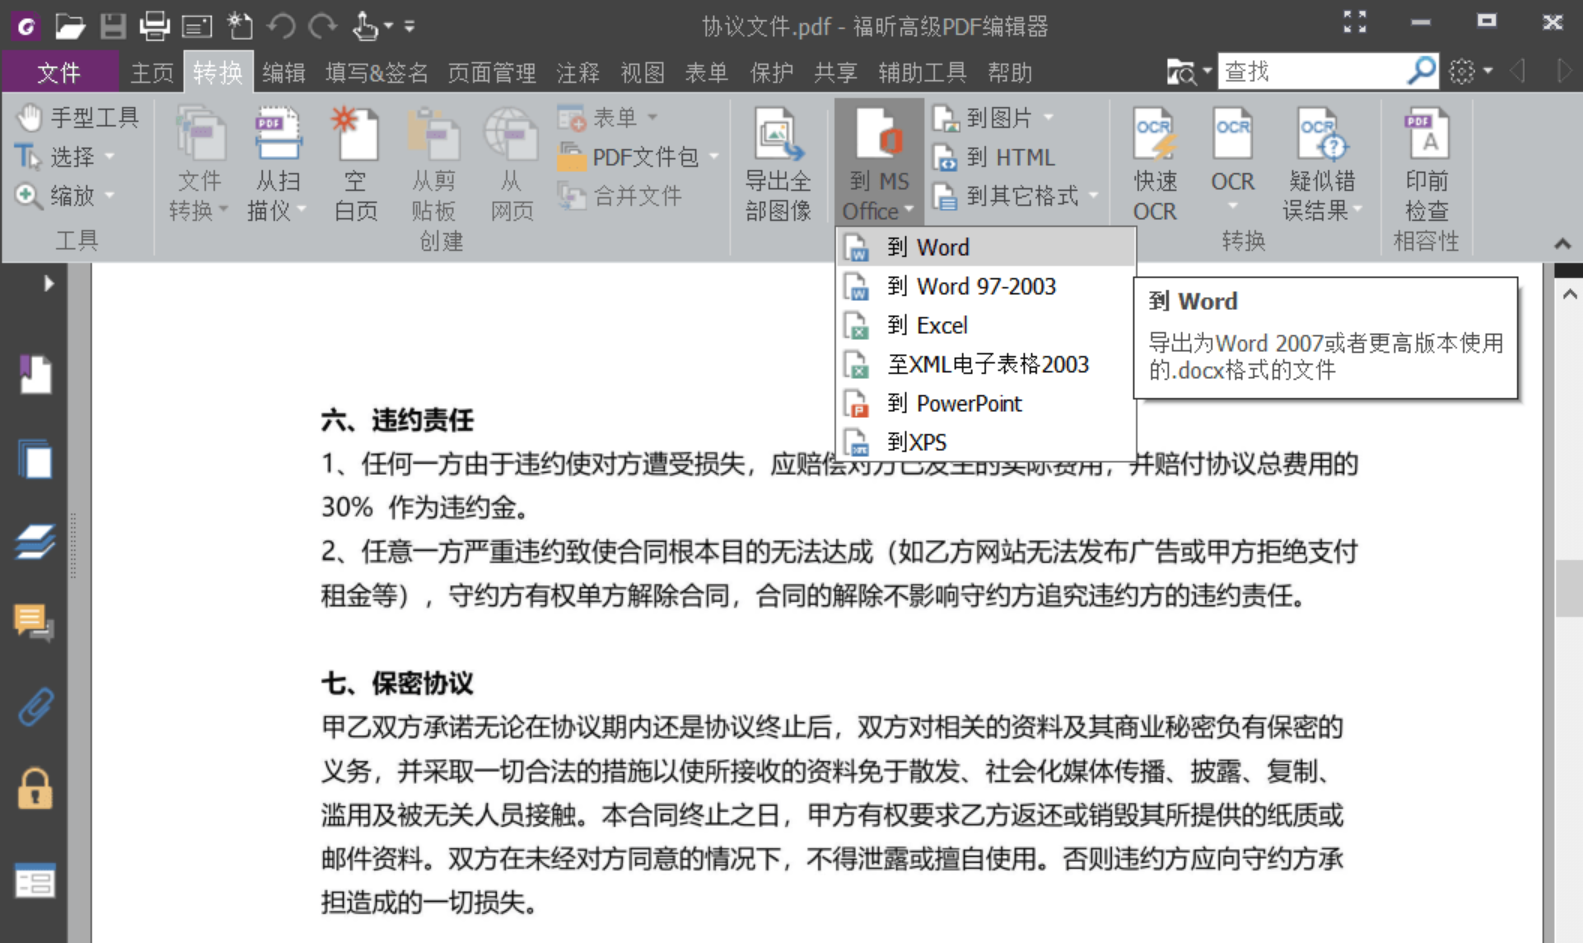 福昕高级PDF编辑器企业版v10.1.5绿色精简版-木风软件站